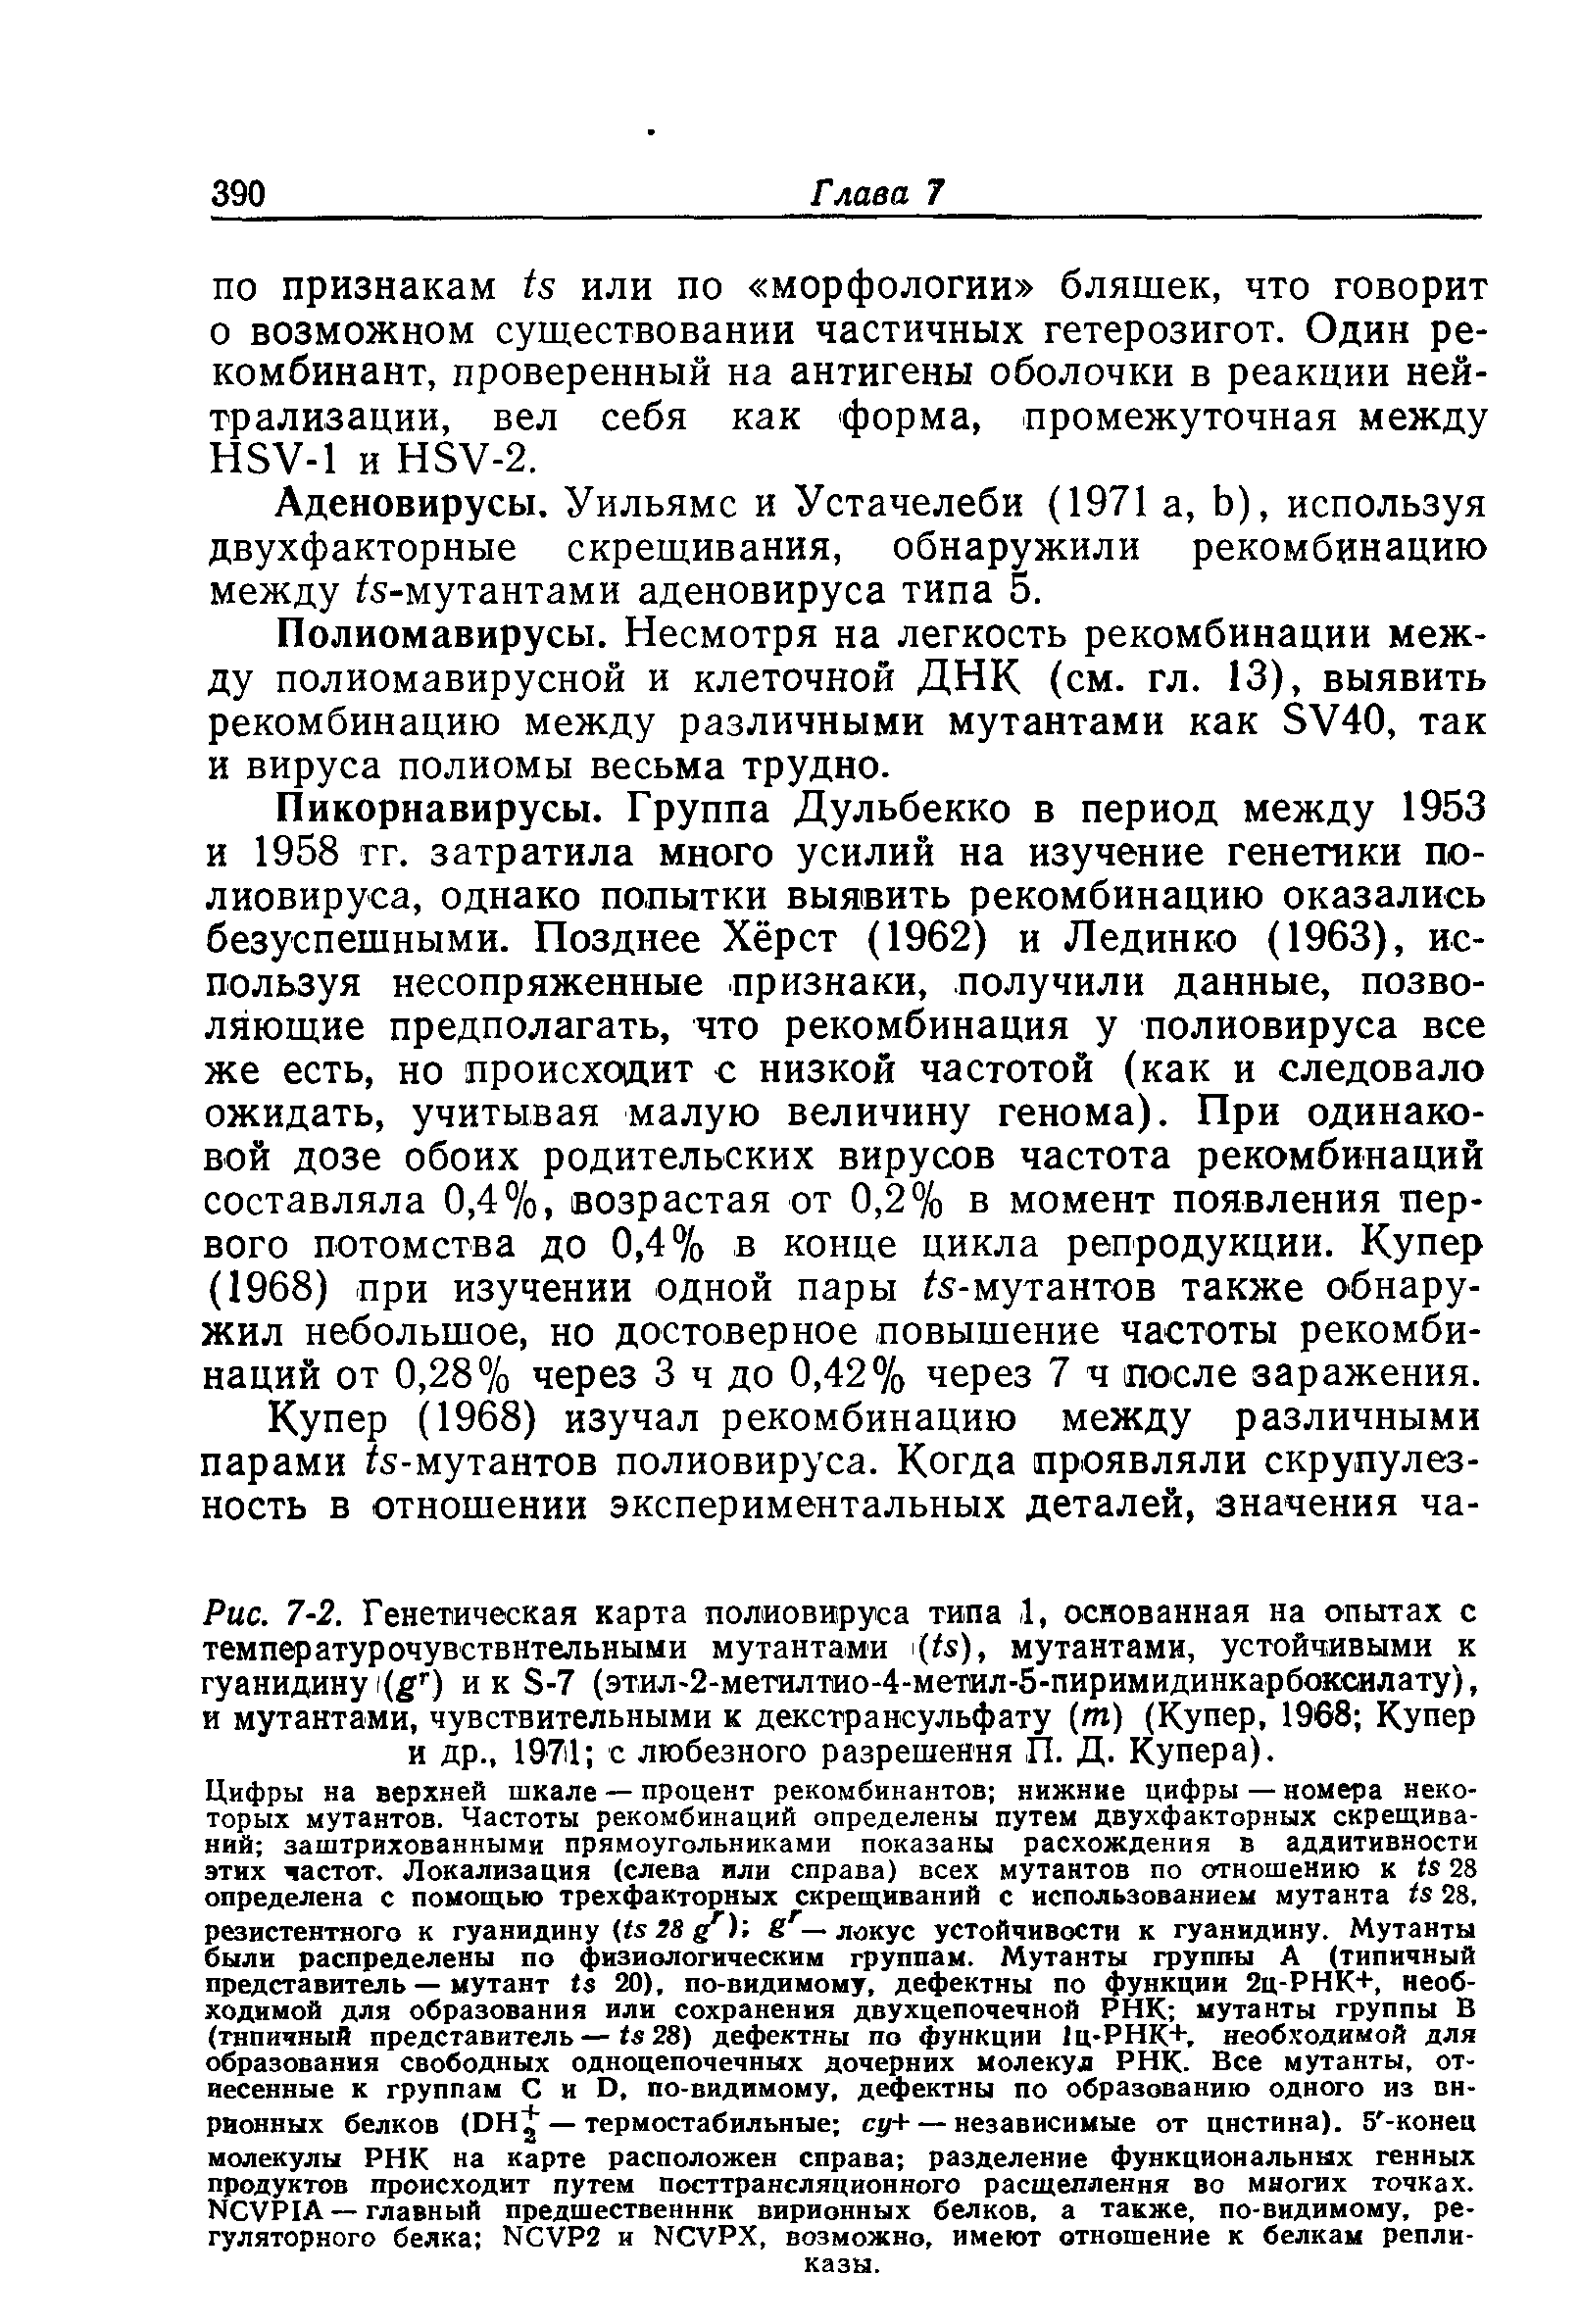 Рис. 7-2. Генетическая карта полиовируса типа 1, основанная на опытах с температурочувствнтельными мутантами (/ ), мутантами, устойчивыми к гуанидину (5Г) и к Б-7 (этил-2-метилтио-4-метил-5-пиримидинкарбоксилату), и мутантами, чувствительными к декстрансульфату (т) (Купер, 1968 Купер и др., 1971 с любезного разрешения, П. Д. Купера).